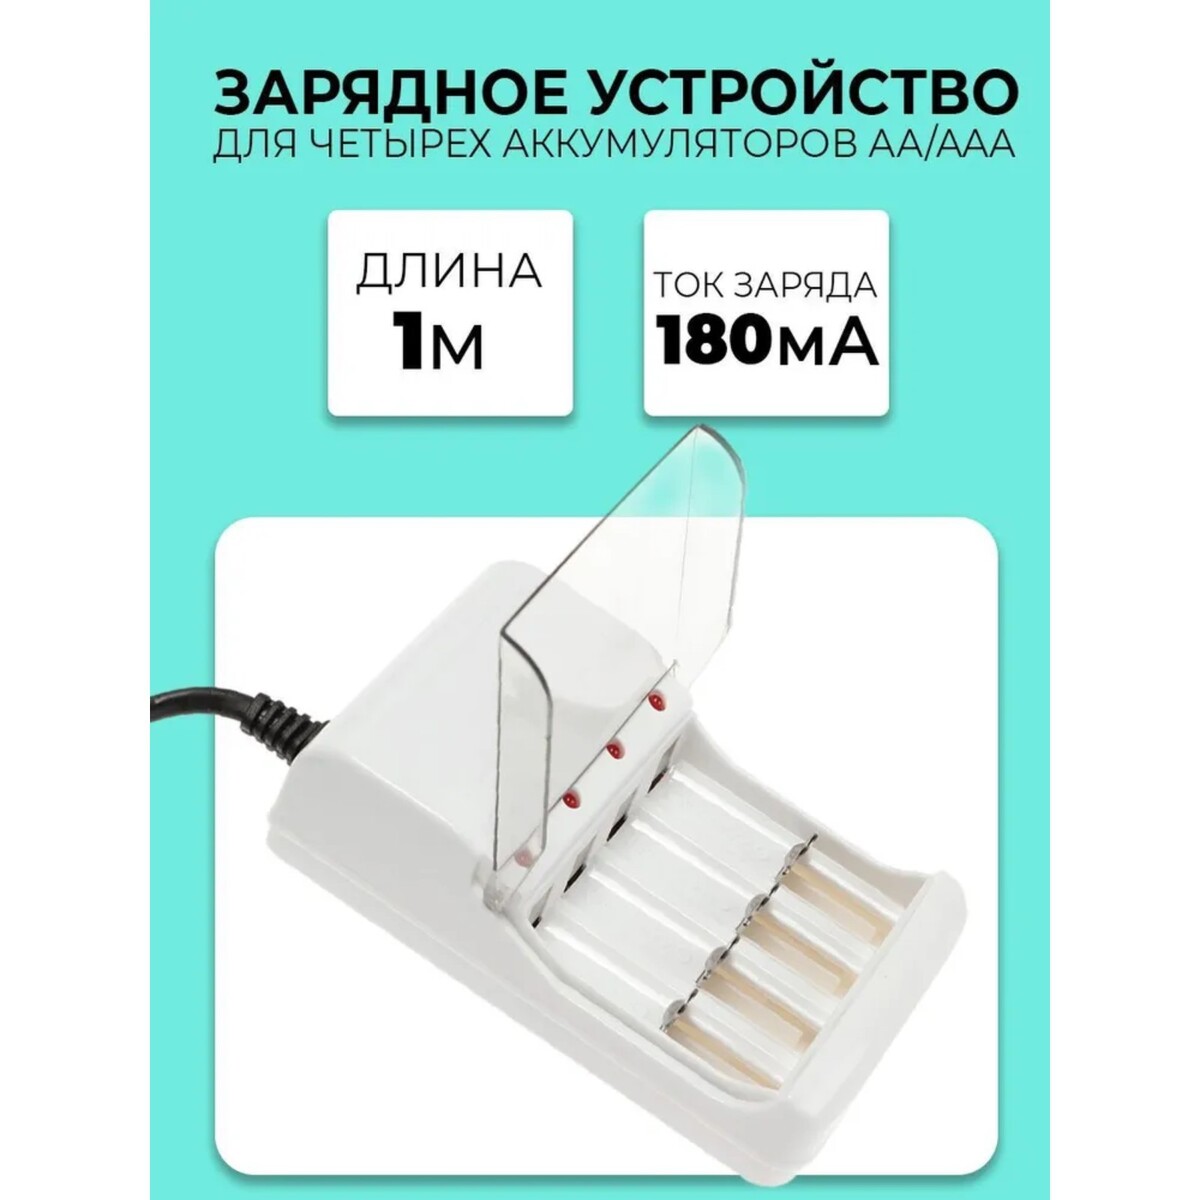 Зарядное устройство для четырех аккумуляторов аа или ааа chr-56, 1 м,ток заряда 180 ма,белое зарядное устройство для двух акб аа или ааа chr 57 вилка складная сила заряда 180 ма белое